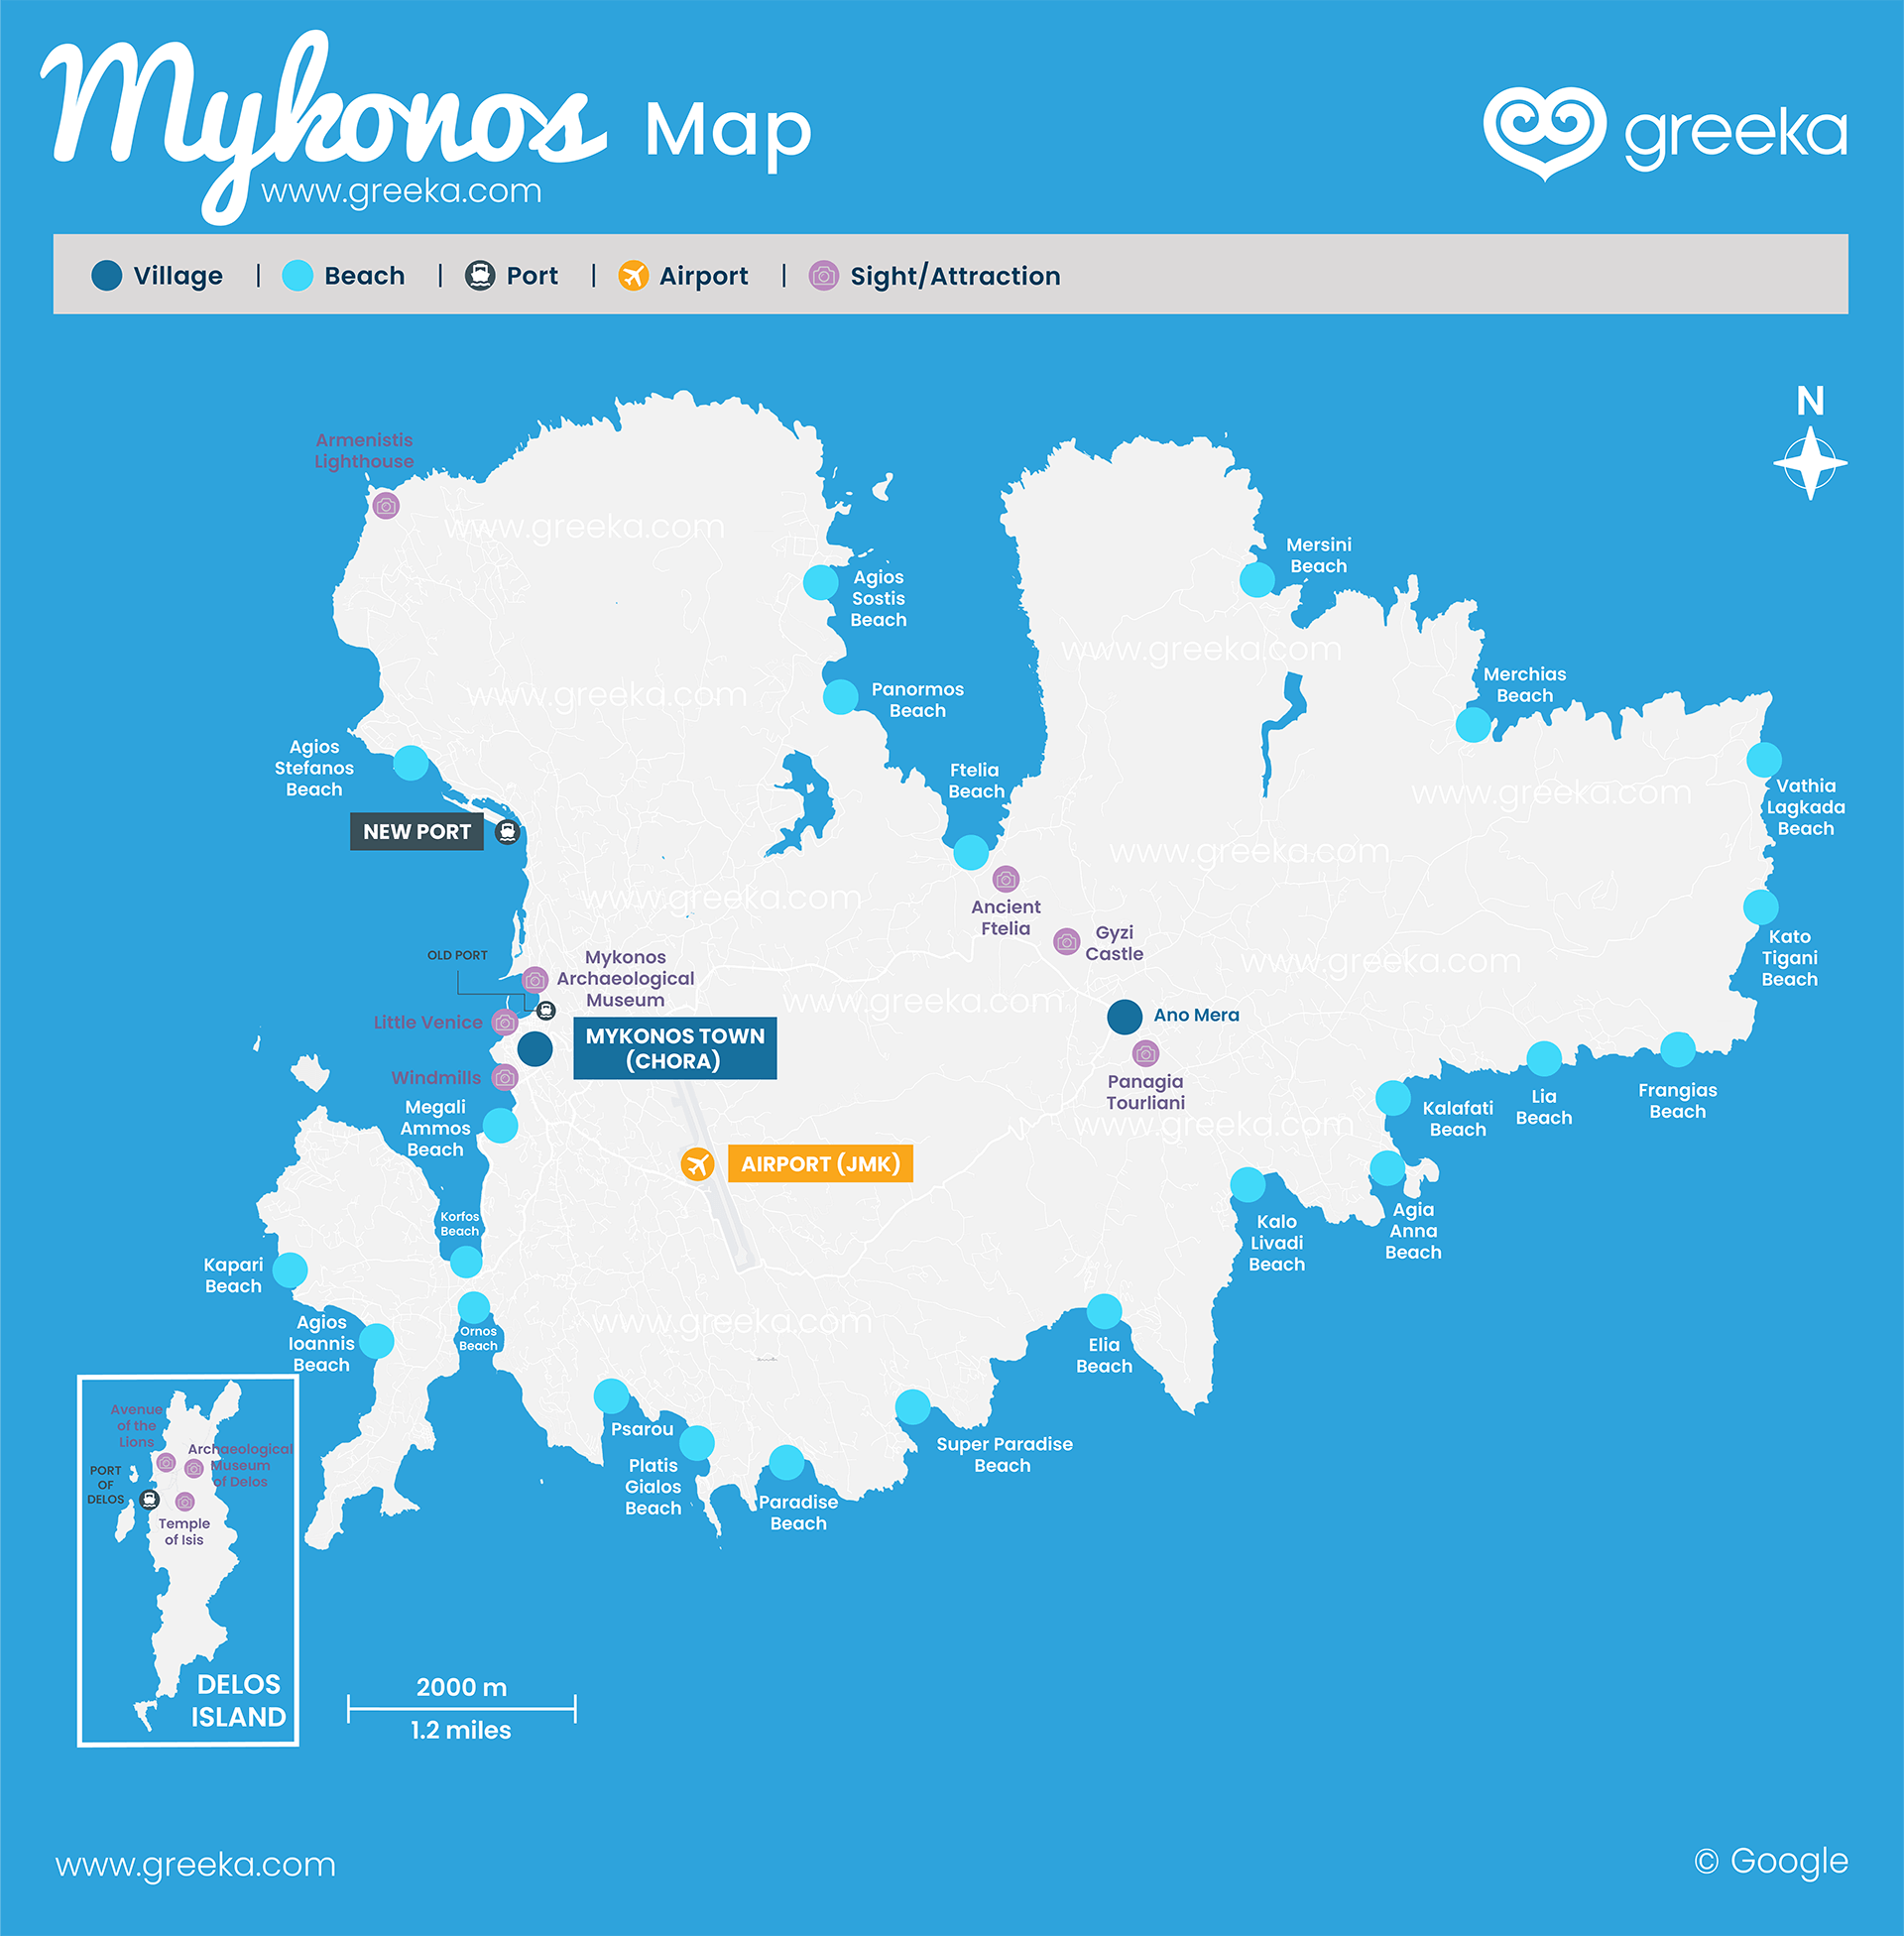 Where is Mykonos? Map of Mykonos, Greece